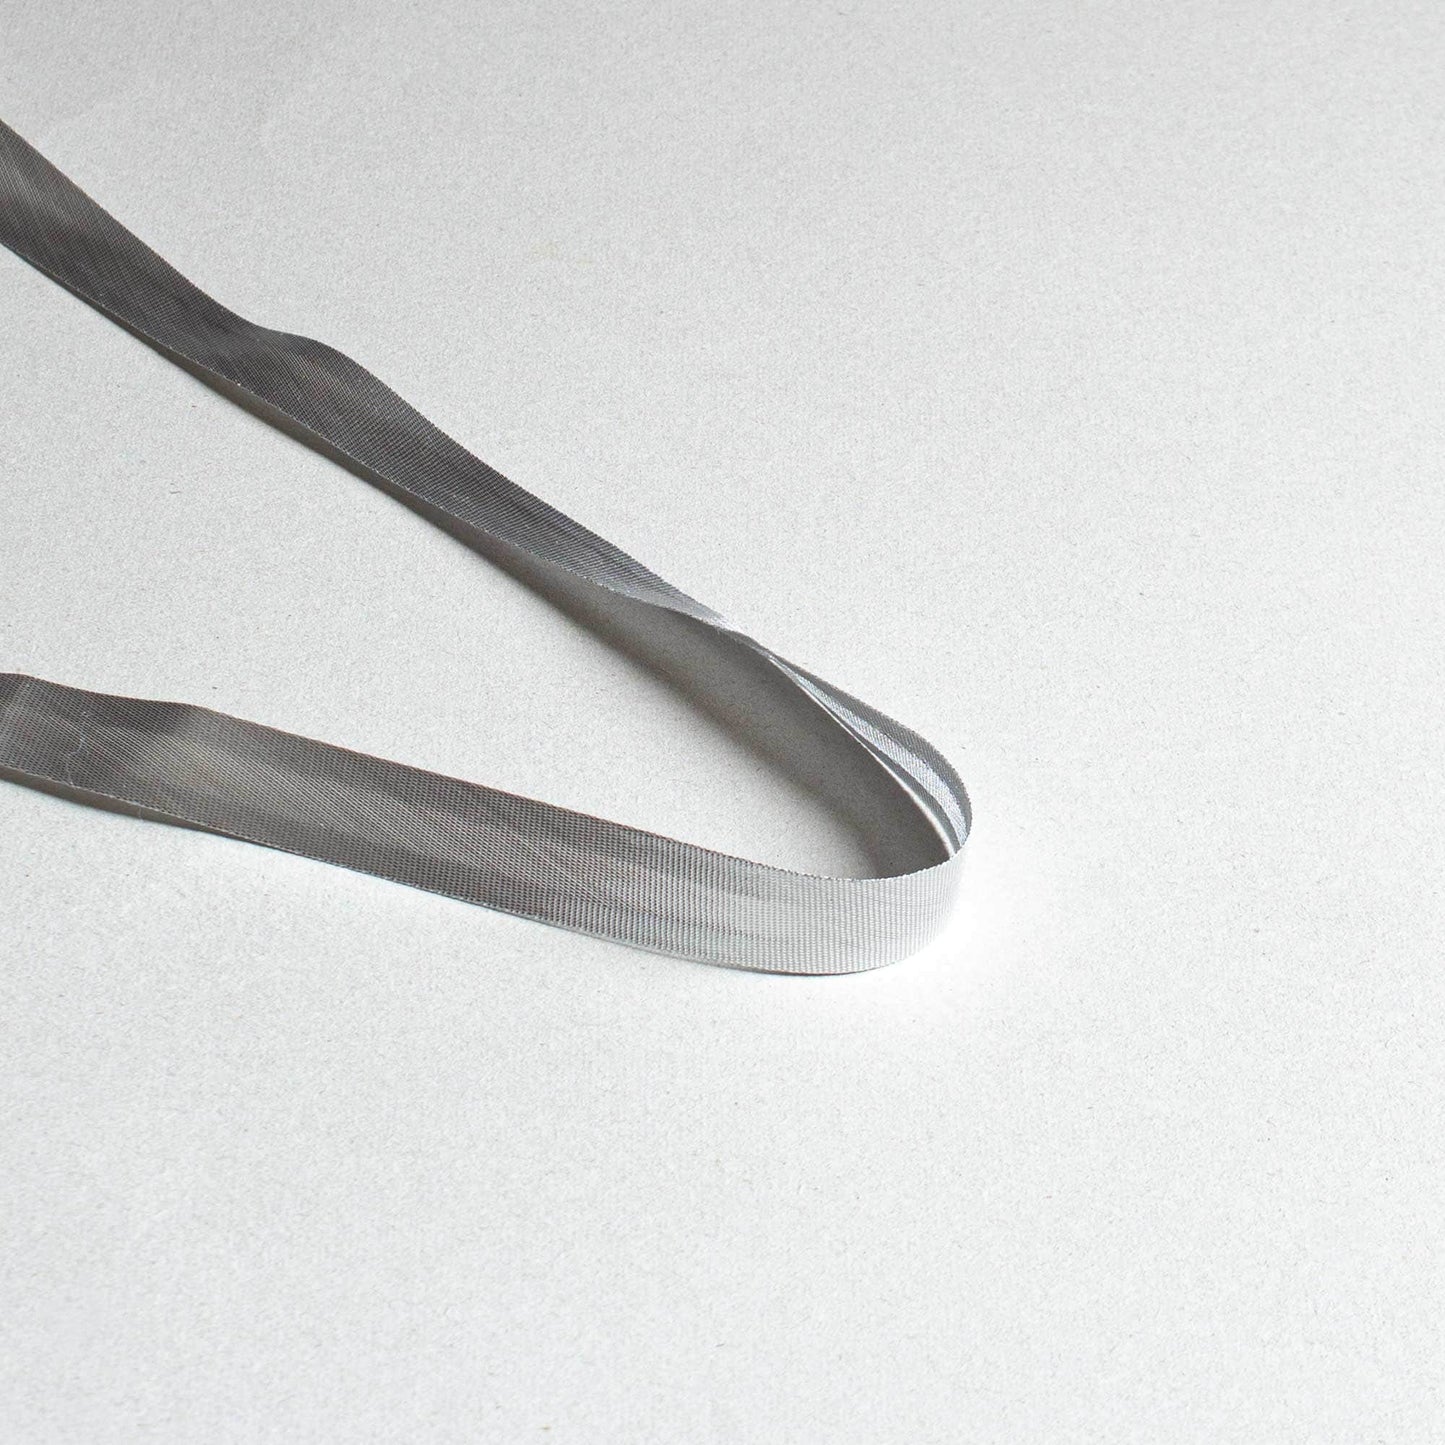 Satin Kantband - Silver 1,5cm 113